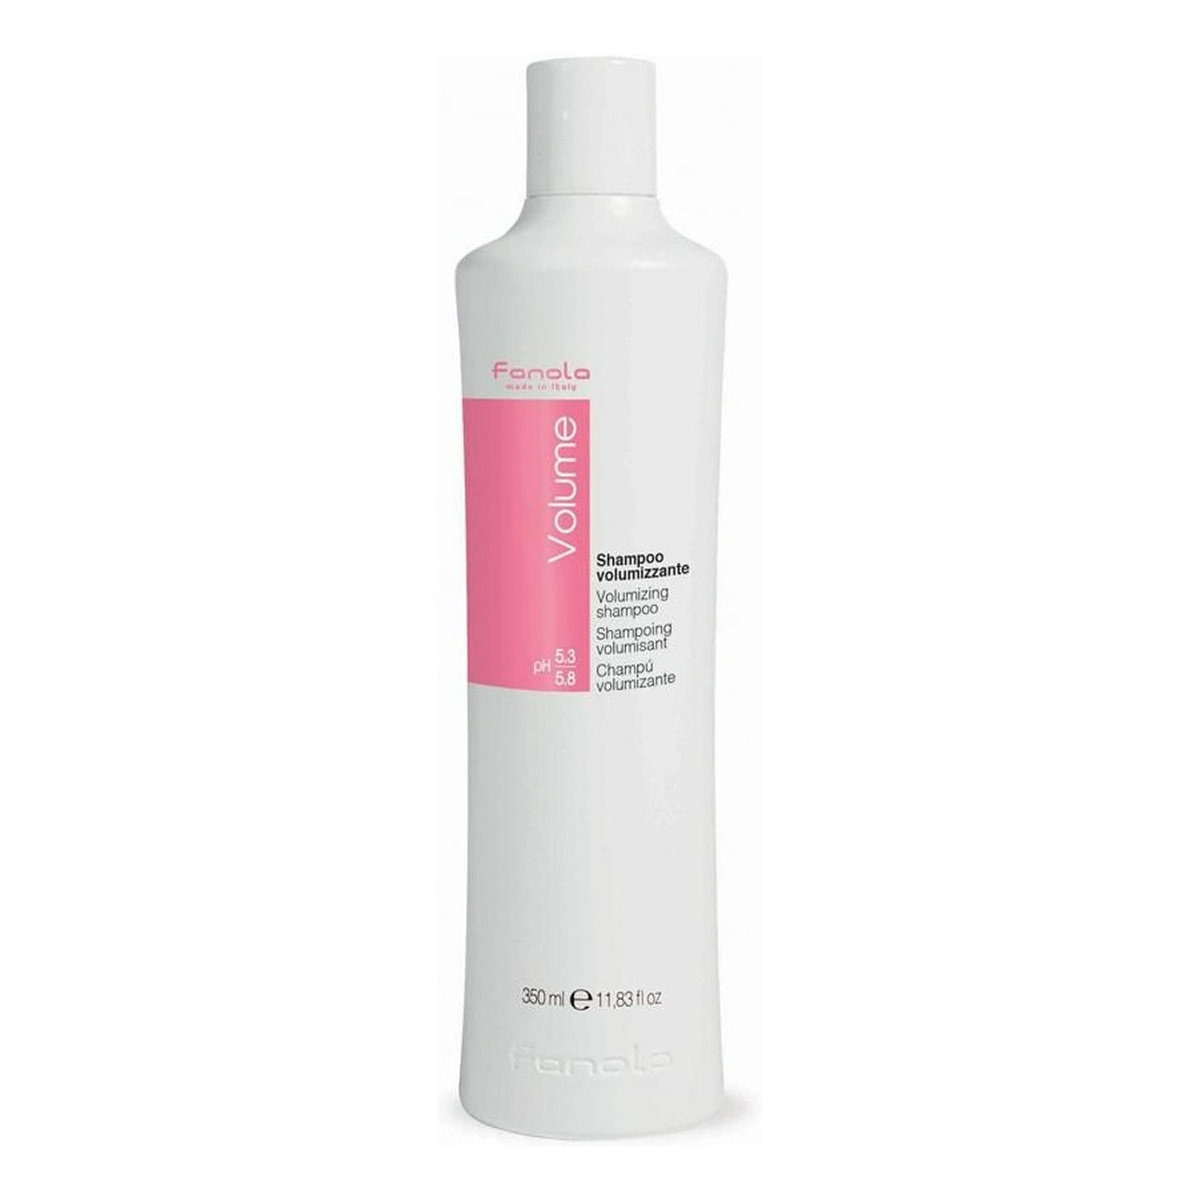 Fanola Volume shampoo szampon zwiększający objętość włosów 350ml